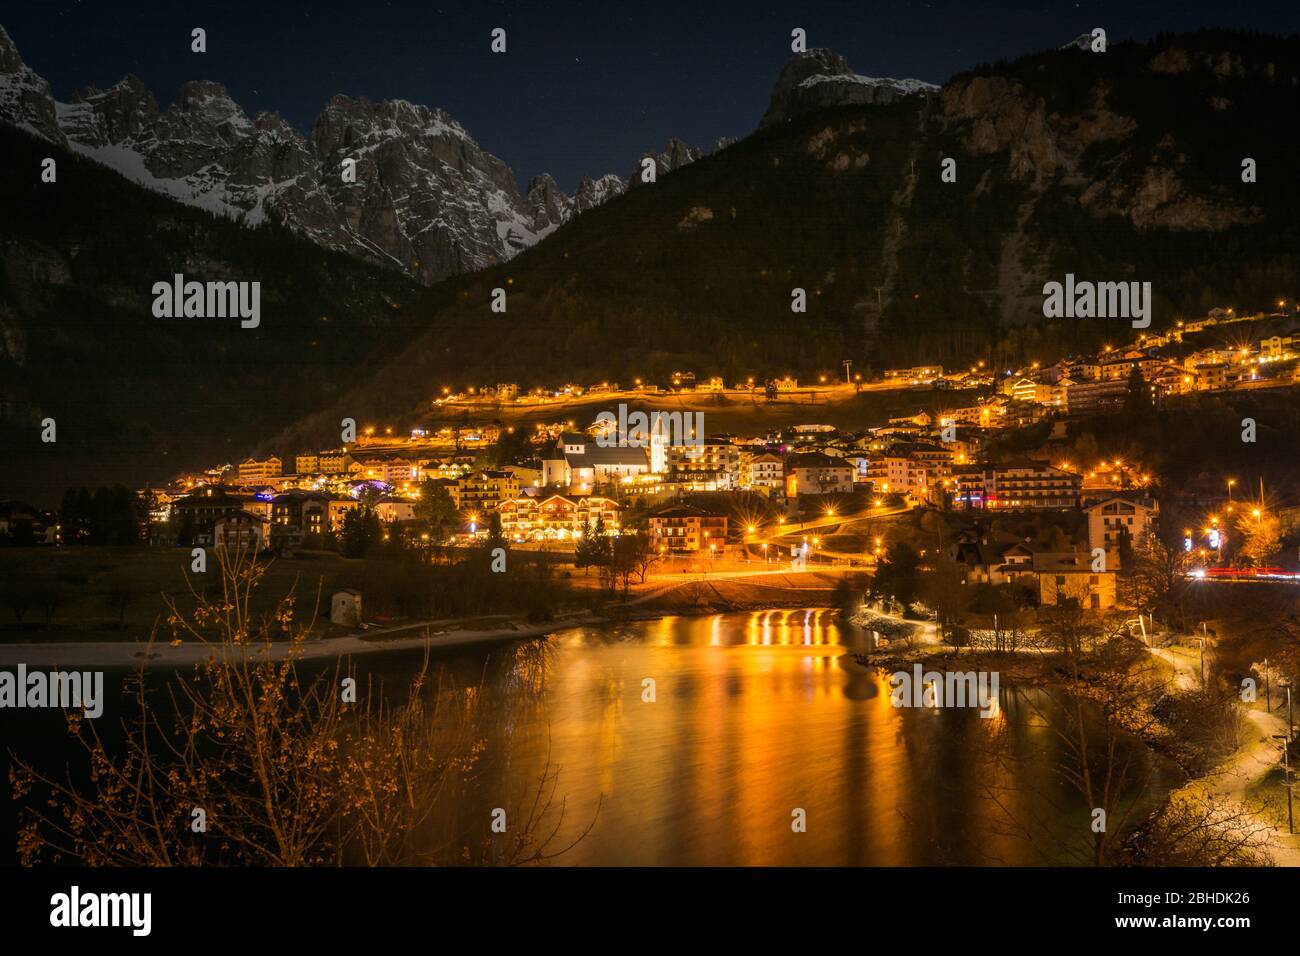 Molvenosee und das Dorf Molveno in Trentino-Südtirol - Trient, Norditalien. Nachtlandschaft des Molveno Sees während der Weihnachtsferien Stockfoto